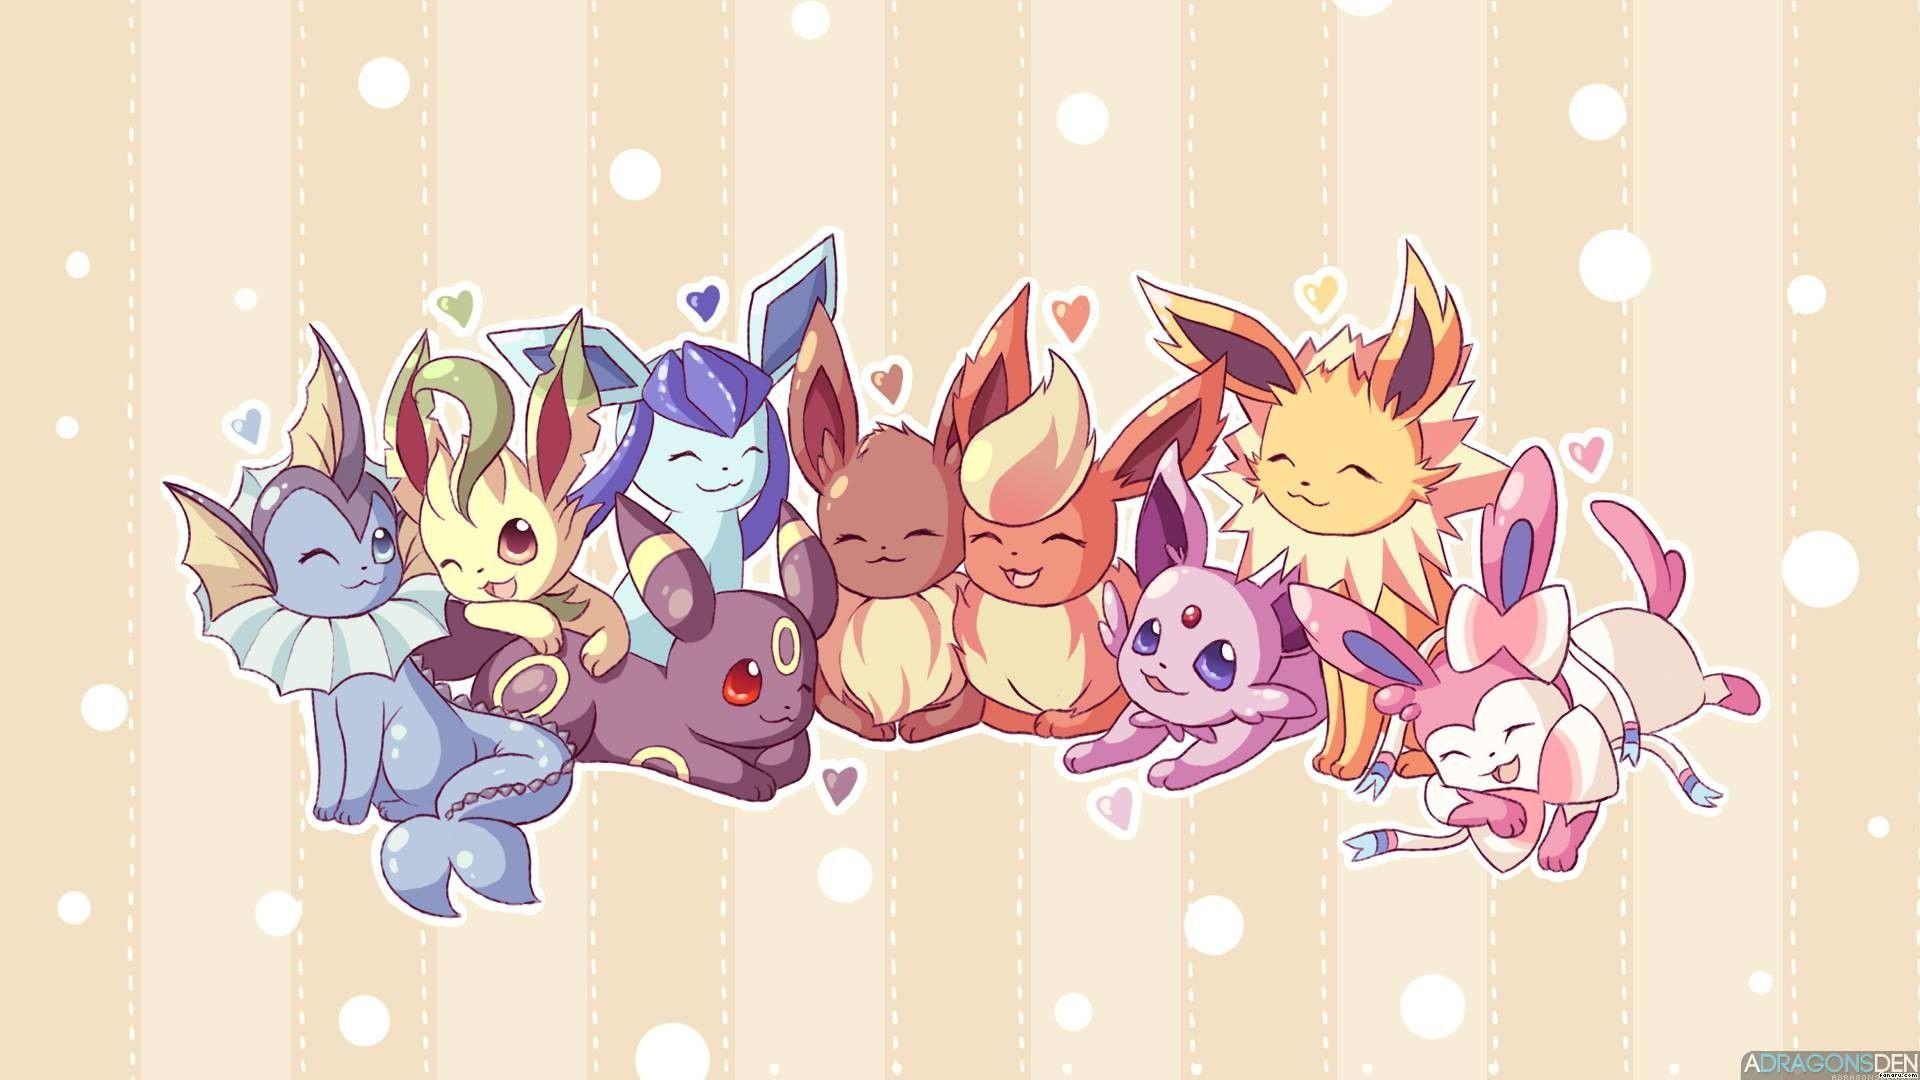 Cute Chibi Pokemon Wallpapers - Top Free Cute Chibi Pokemon ...